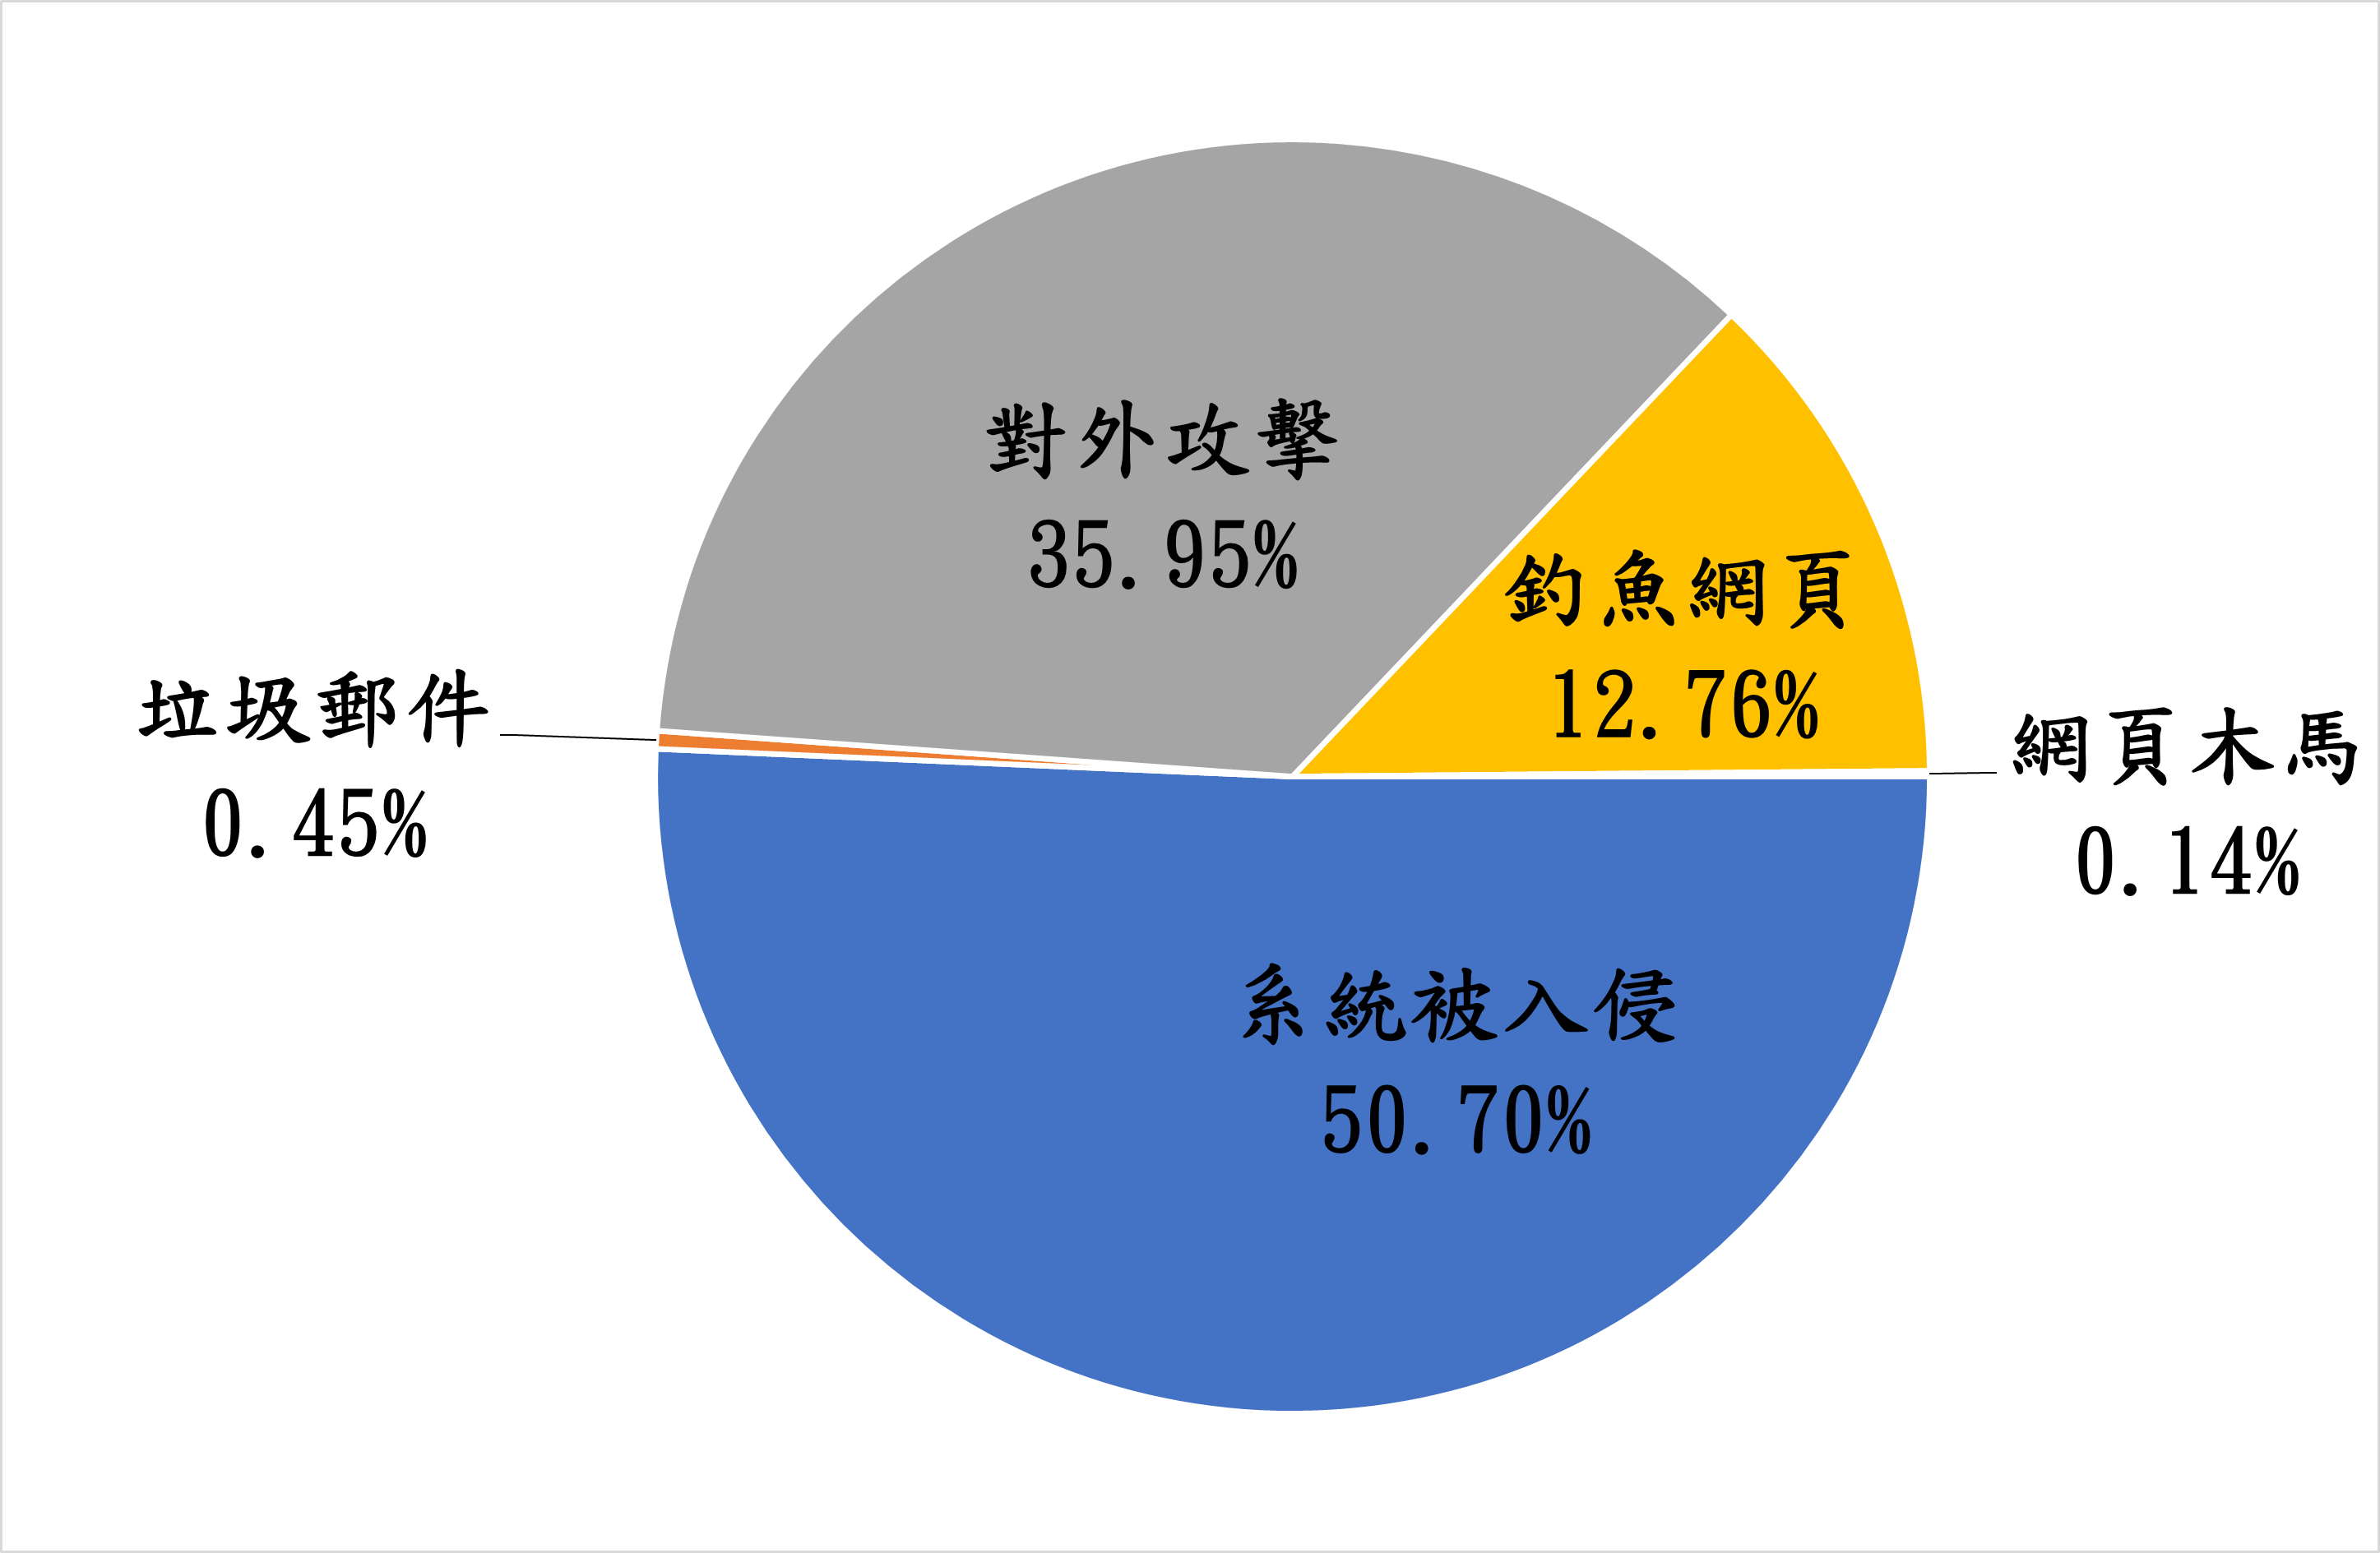 垃圾郵件0.45% 對外攻擊35.95% 釣魚網頁12.76% 網頁木馬0.14% 系統被入侵50.7%